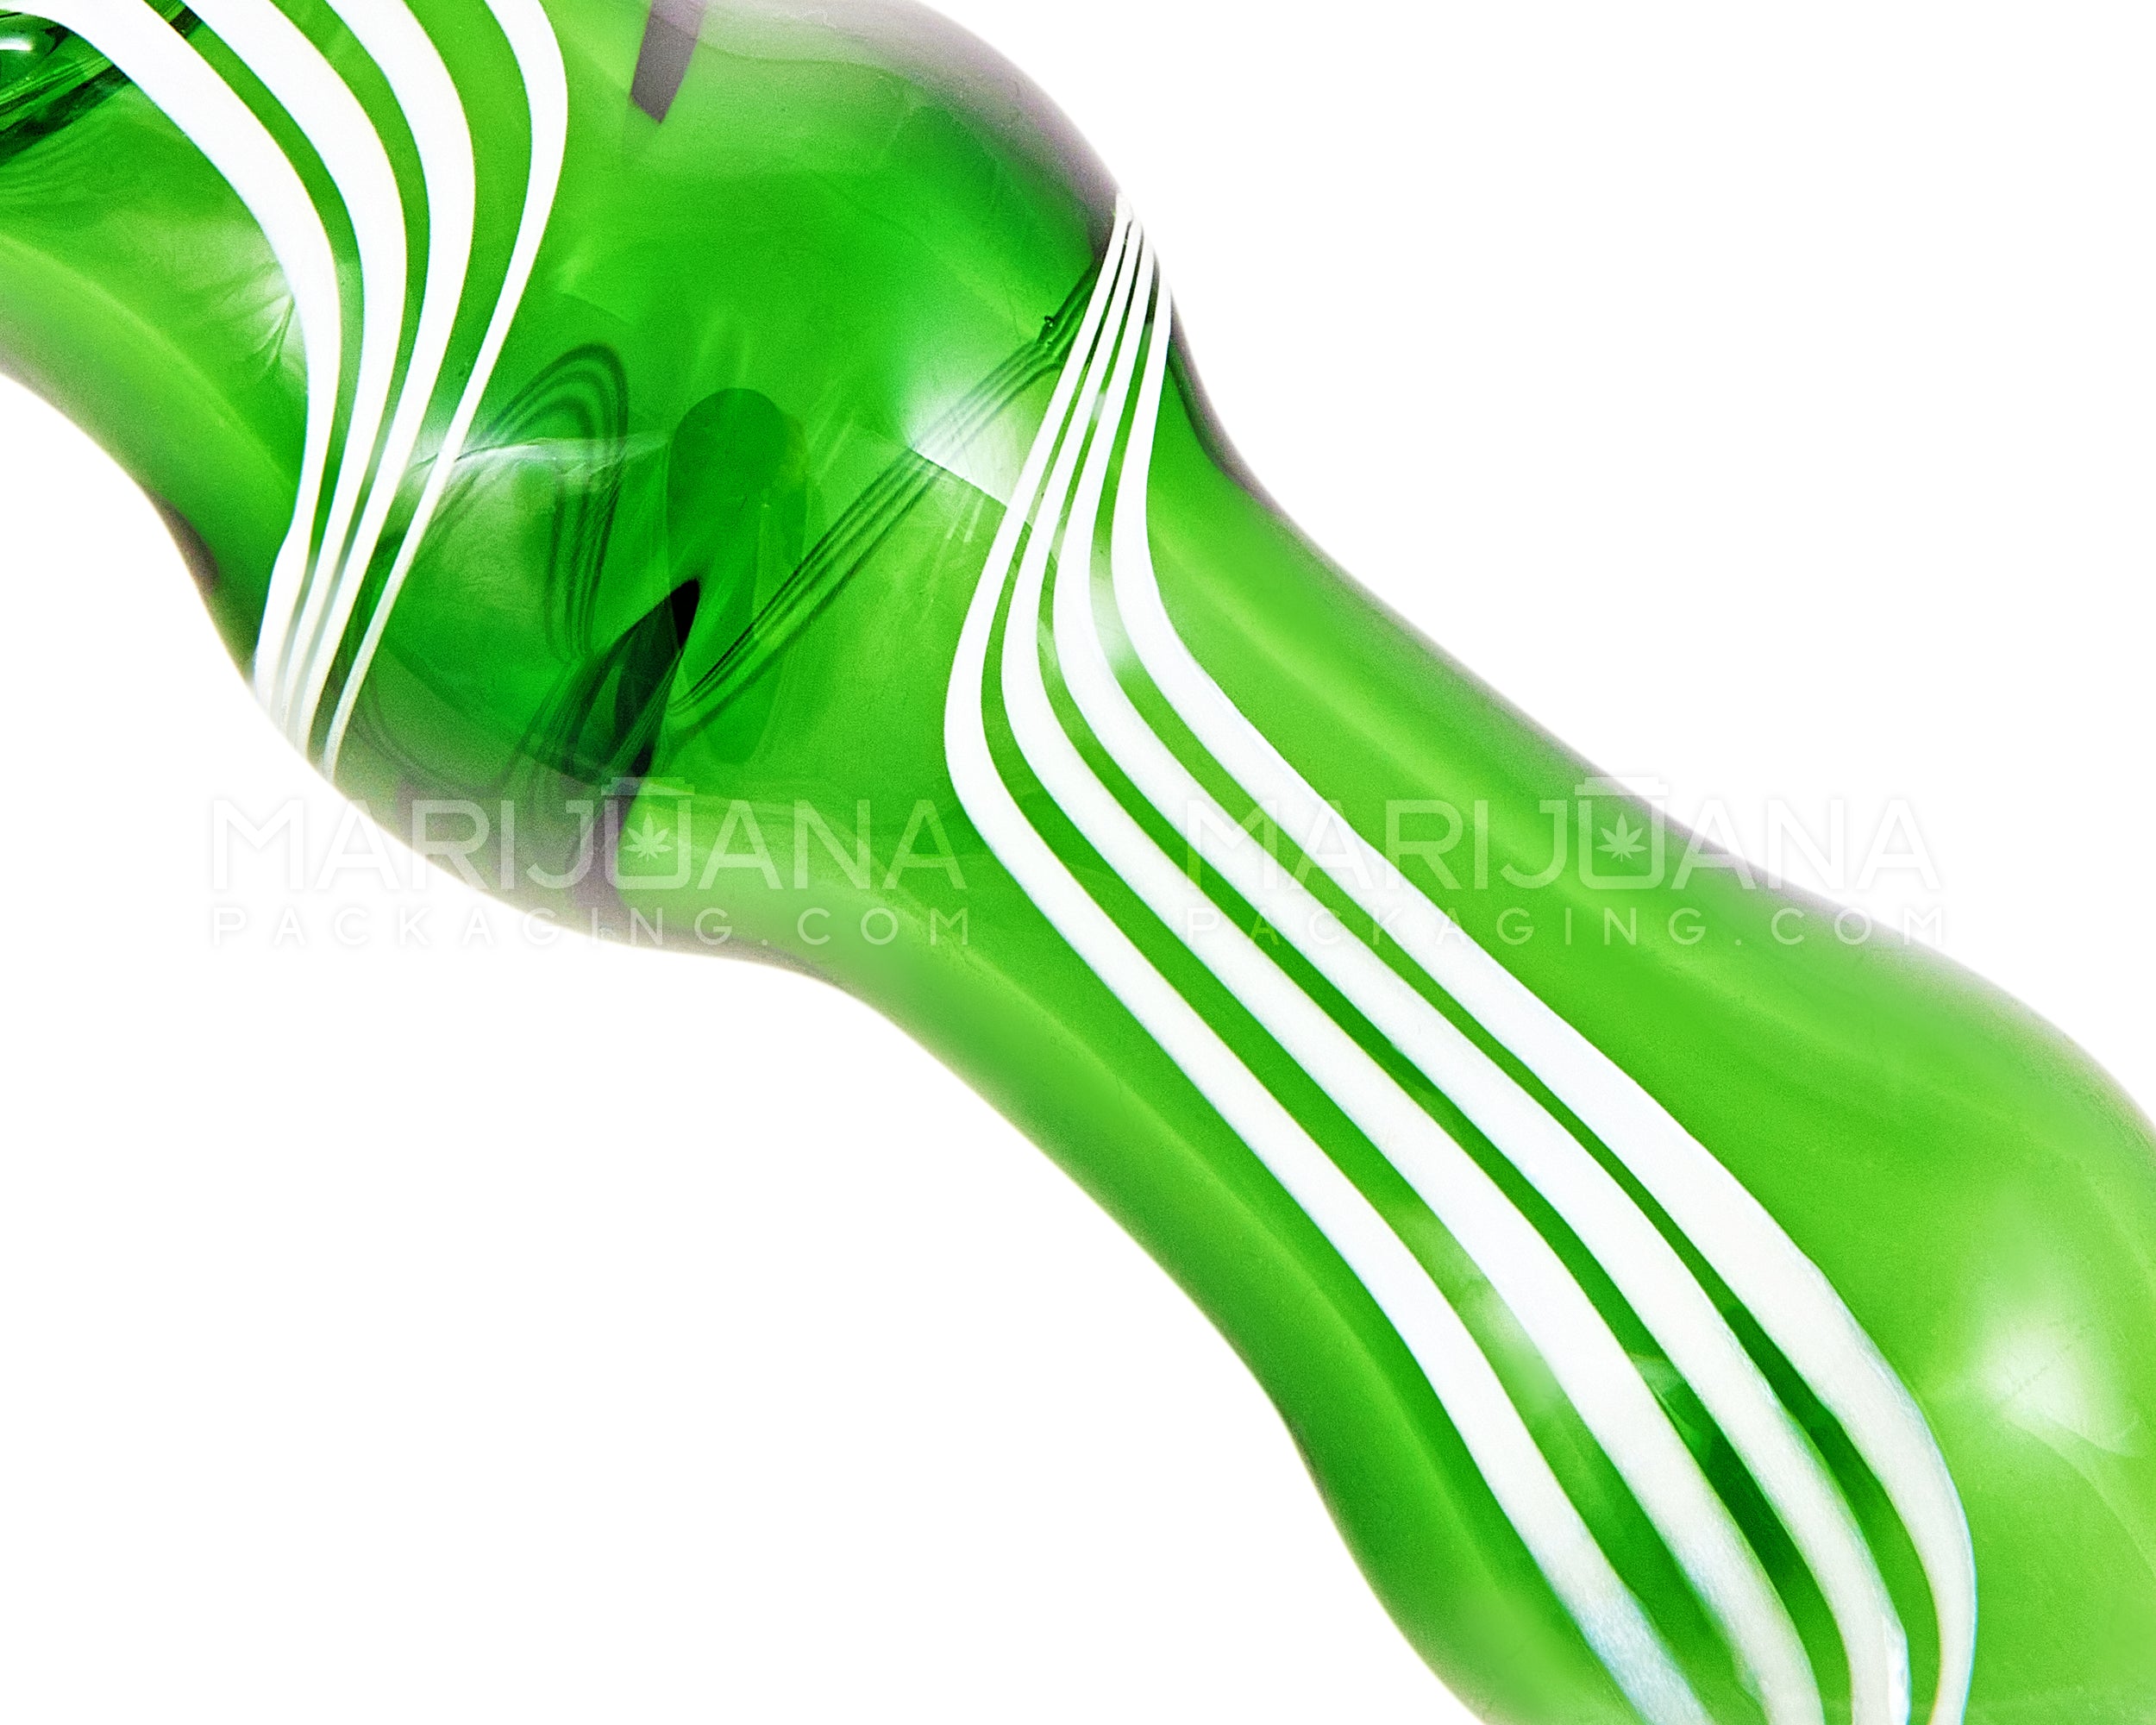 Swirl Bulged Spoon Hand Pipe w/ Triple Knockers | 3.5in Long - Glass - Green - 3